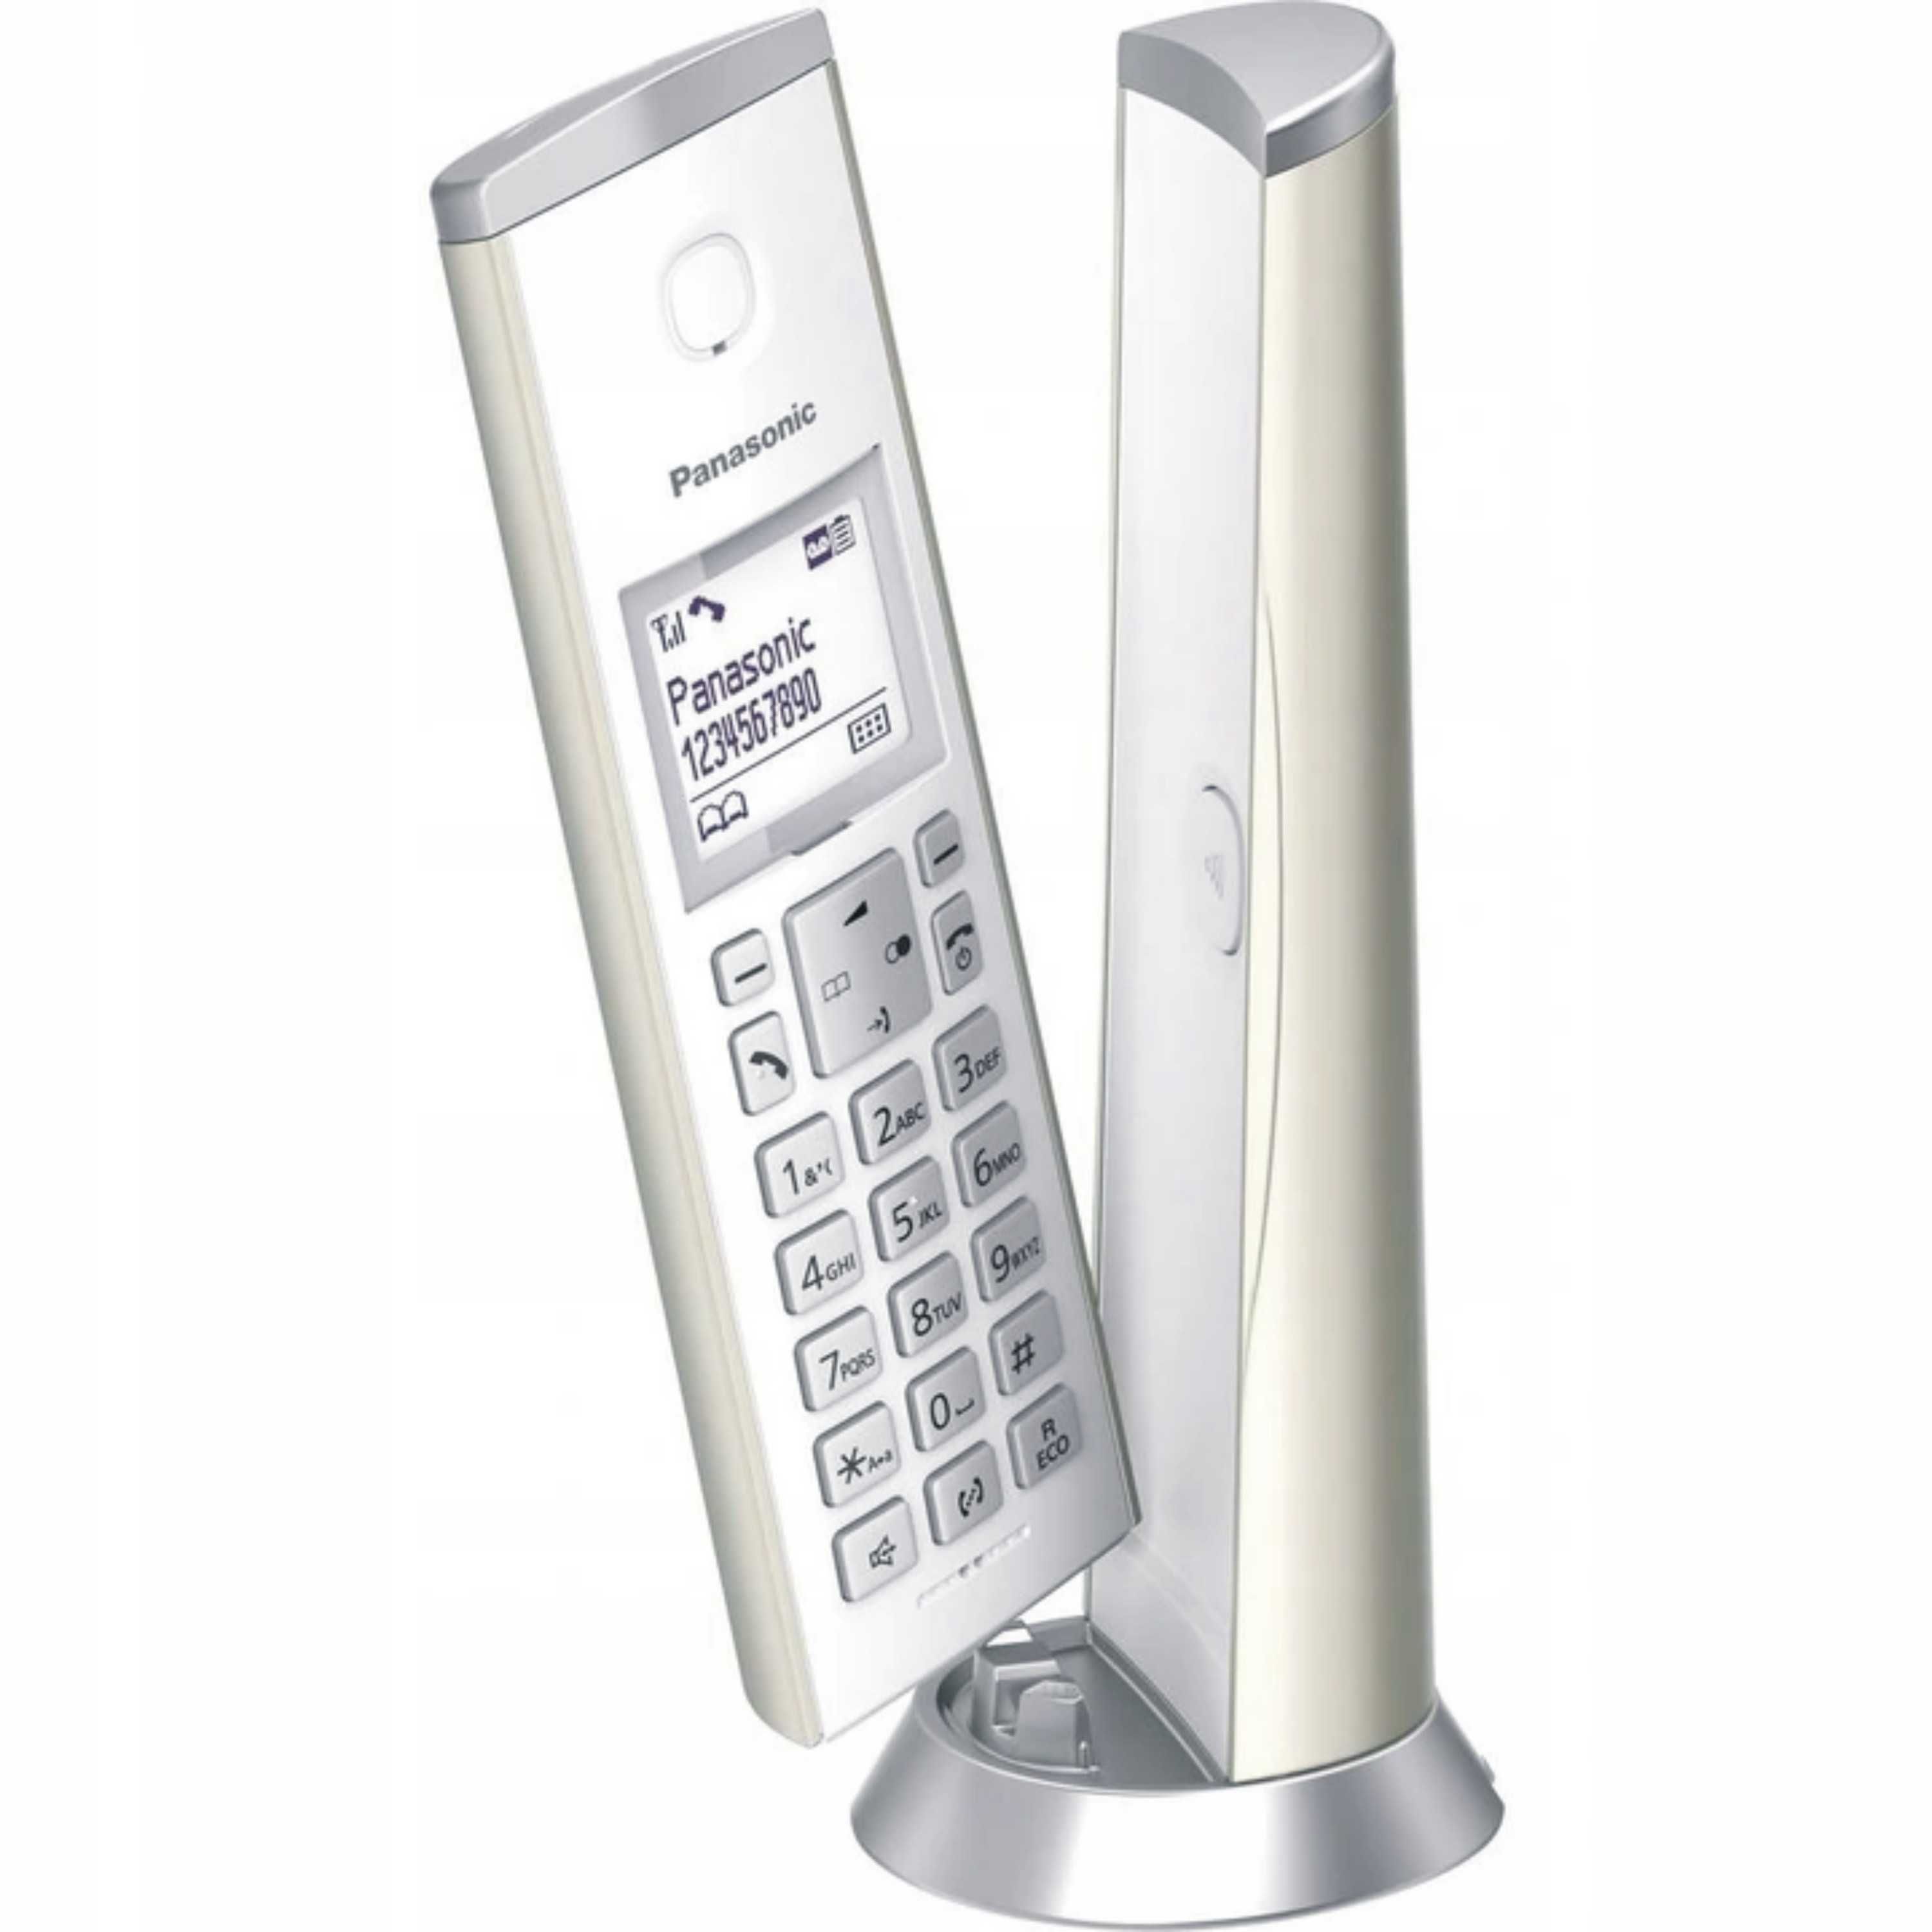 OKAZJA! Telefon bezprzewodowy Panasonic KX-TGK220GN